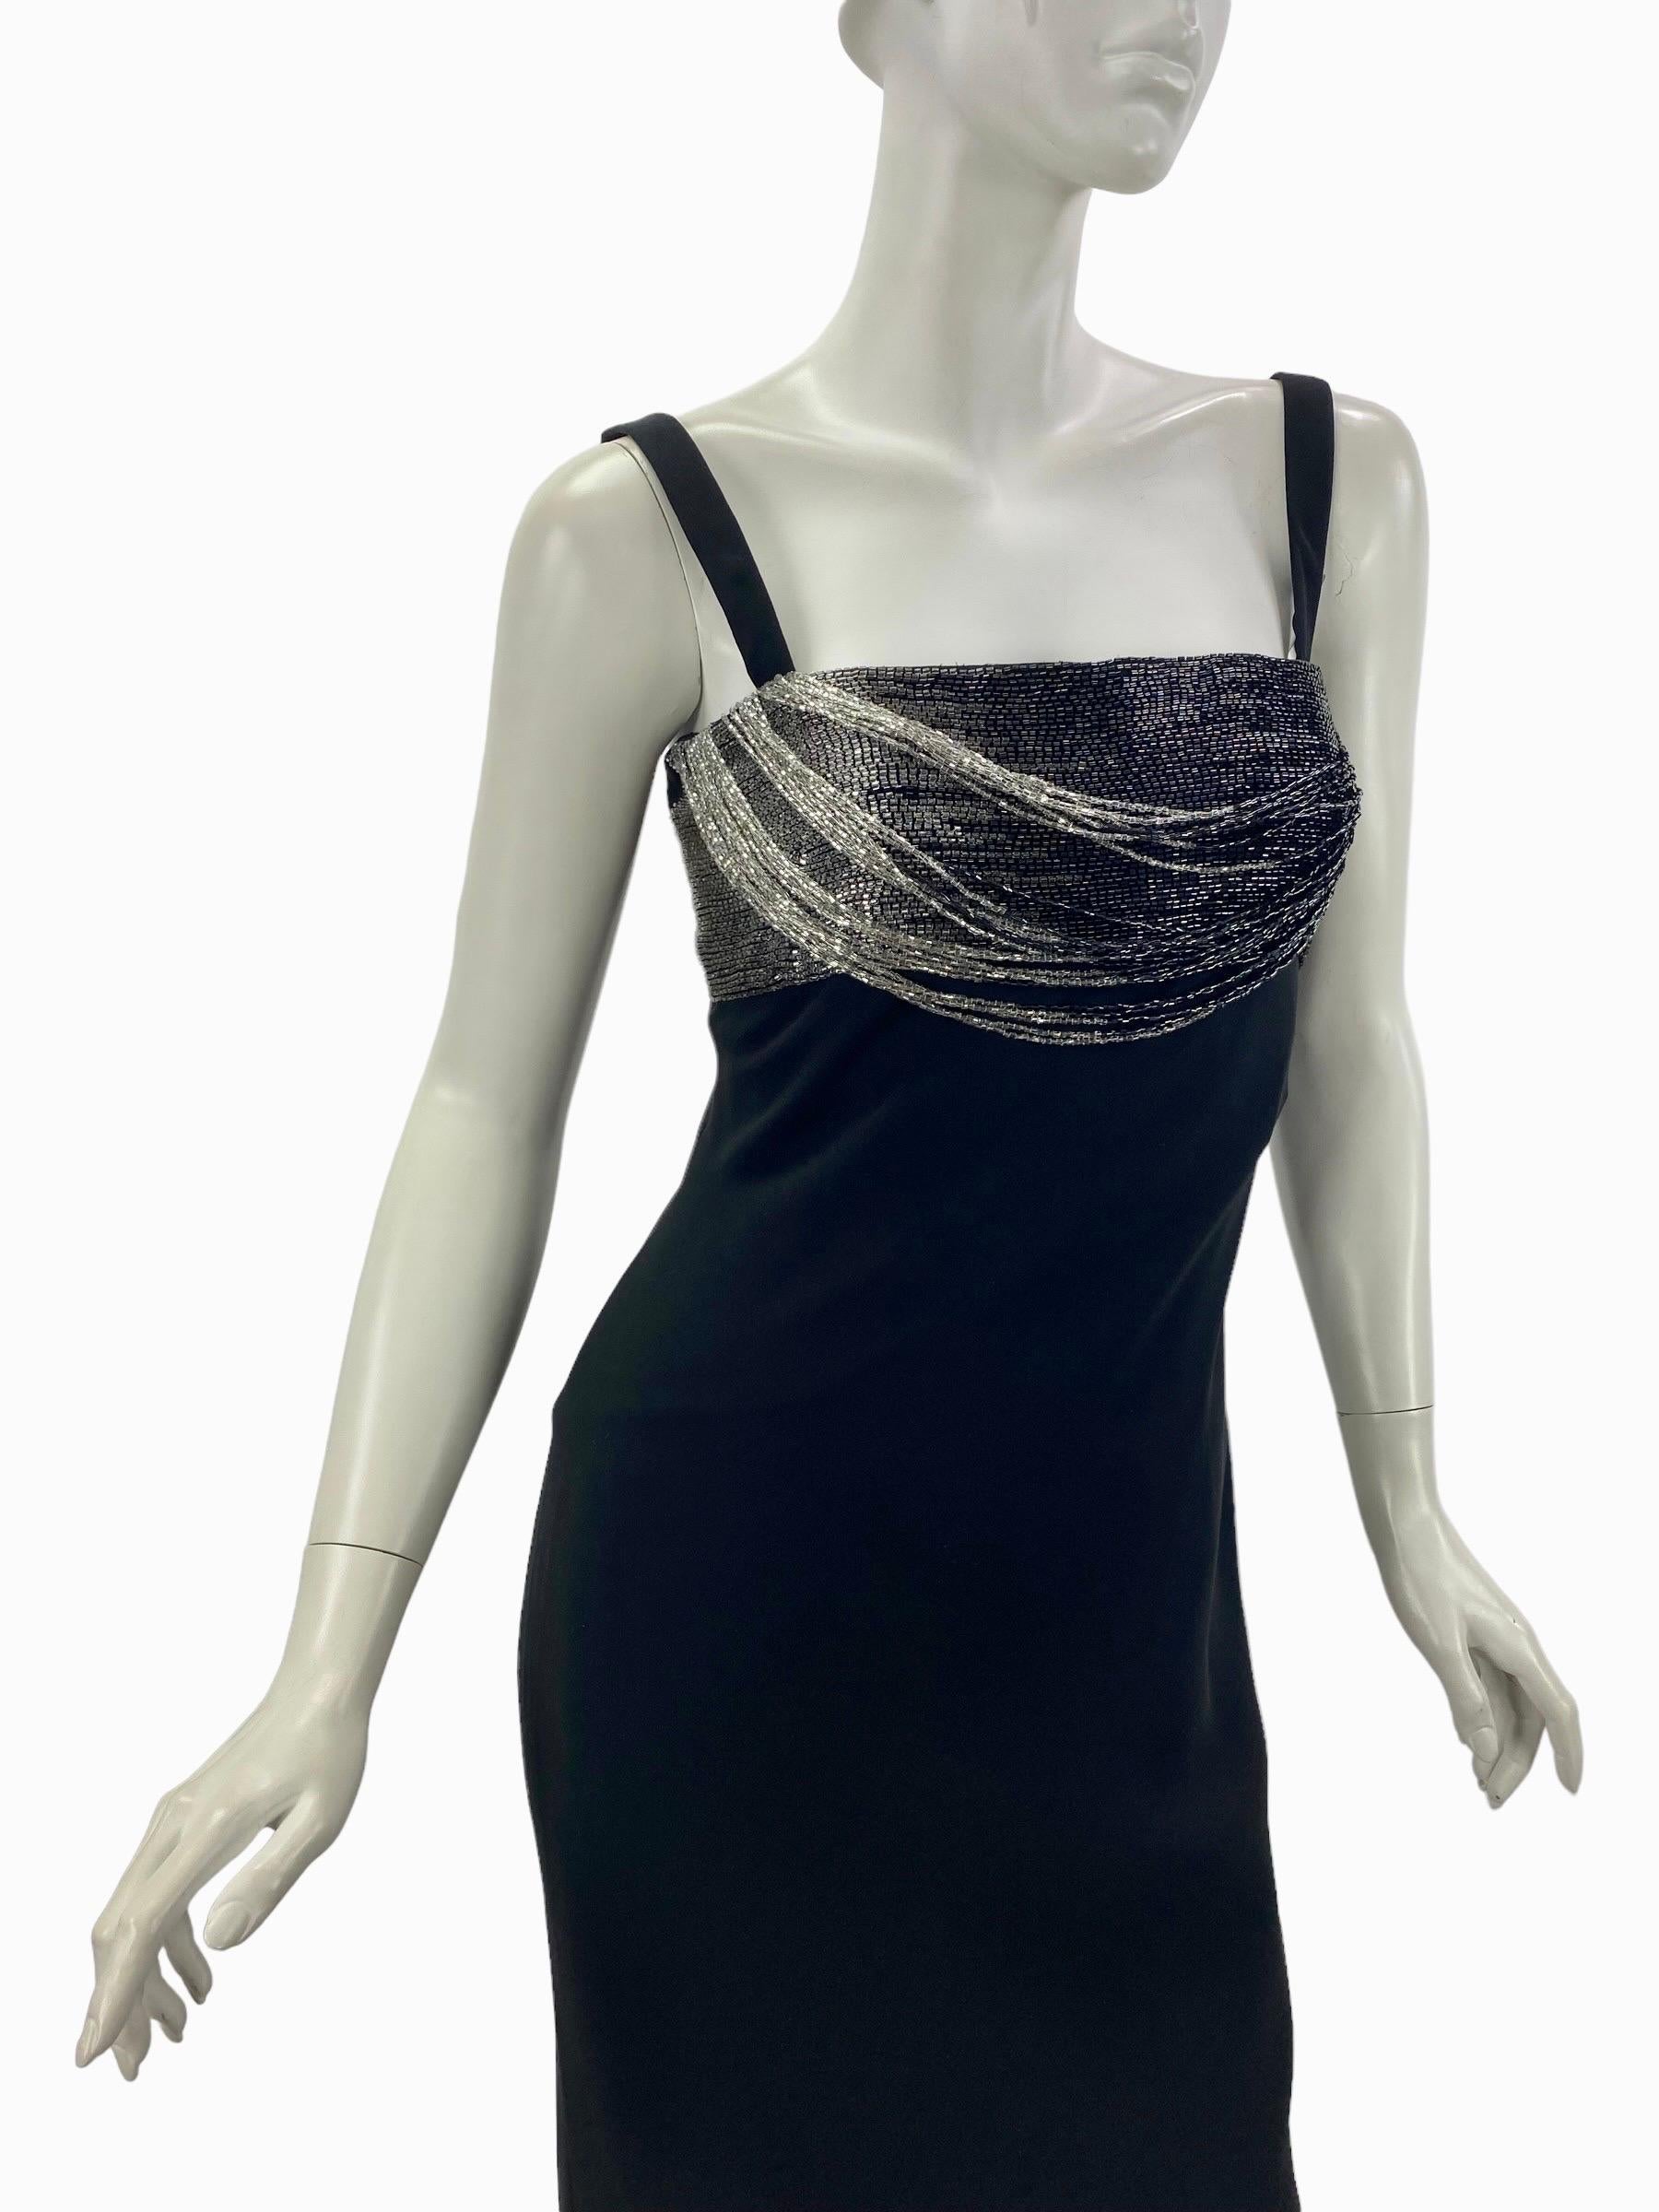 90-er Jahre Vintage Gianni Versace Couture Schwarzes verziertes Kleid
It Größe 42 - US 6
100% Seide
Vollständig gefüttert
Inneres Korsett
Hergestellt in Italien
Ausgezeichneter Zustand
